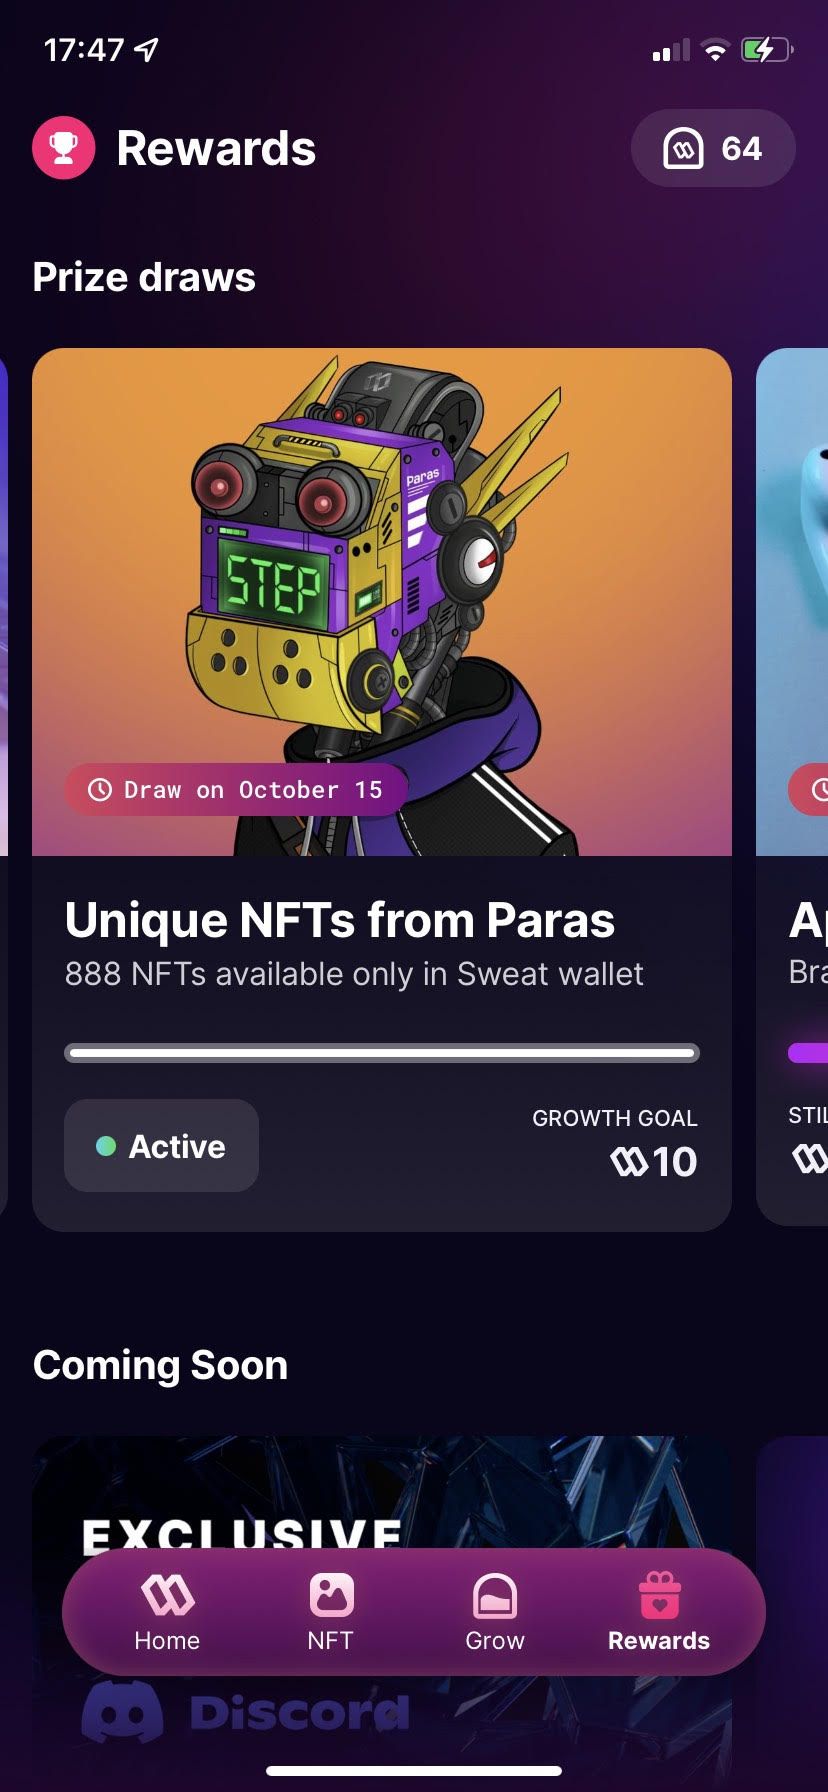 Rewards dashboard showing unique NFTs from Paris